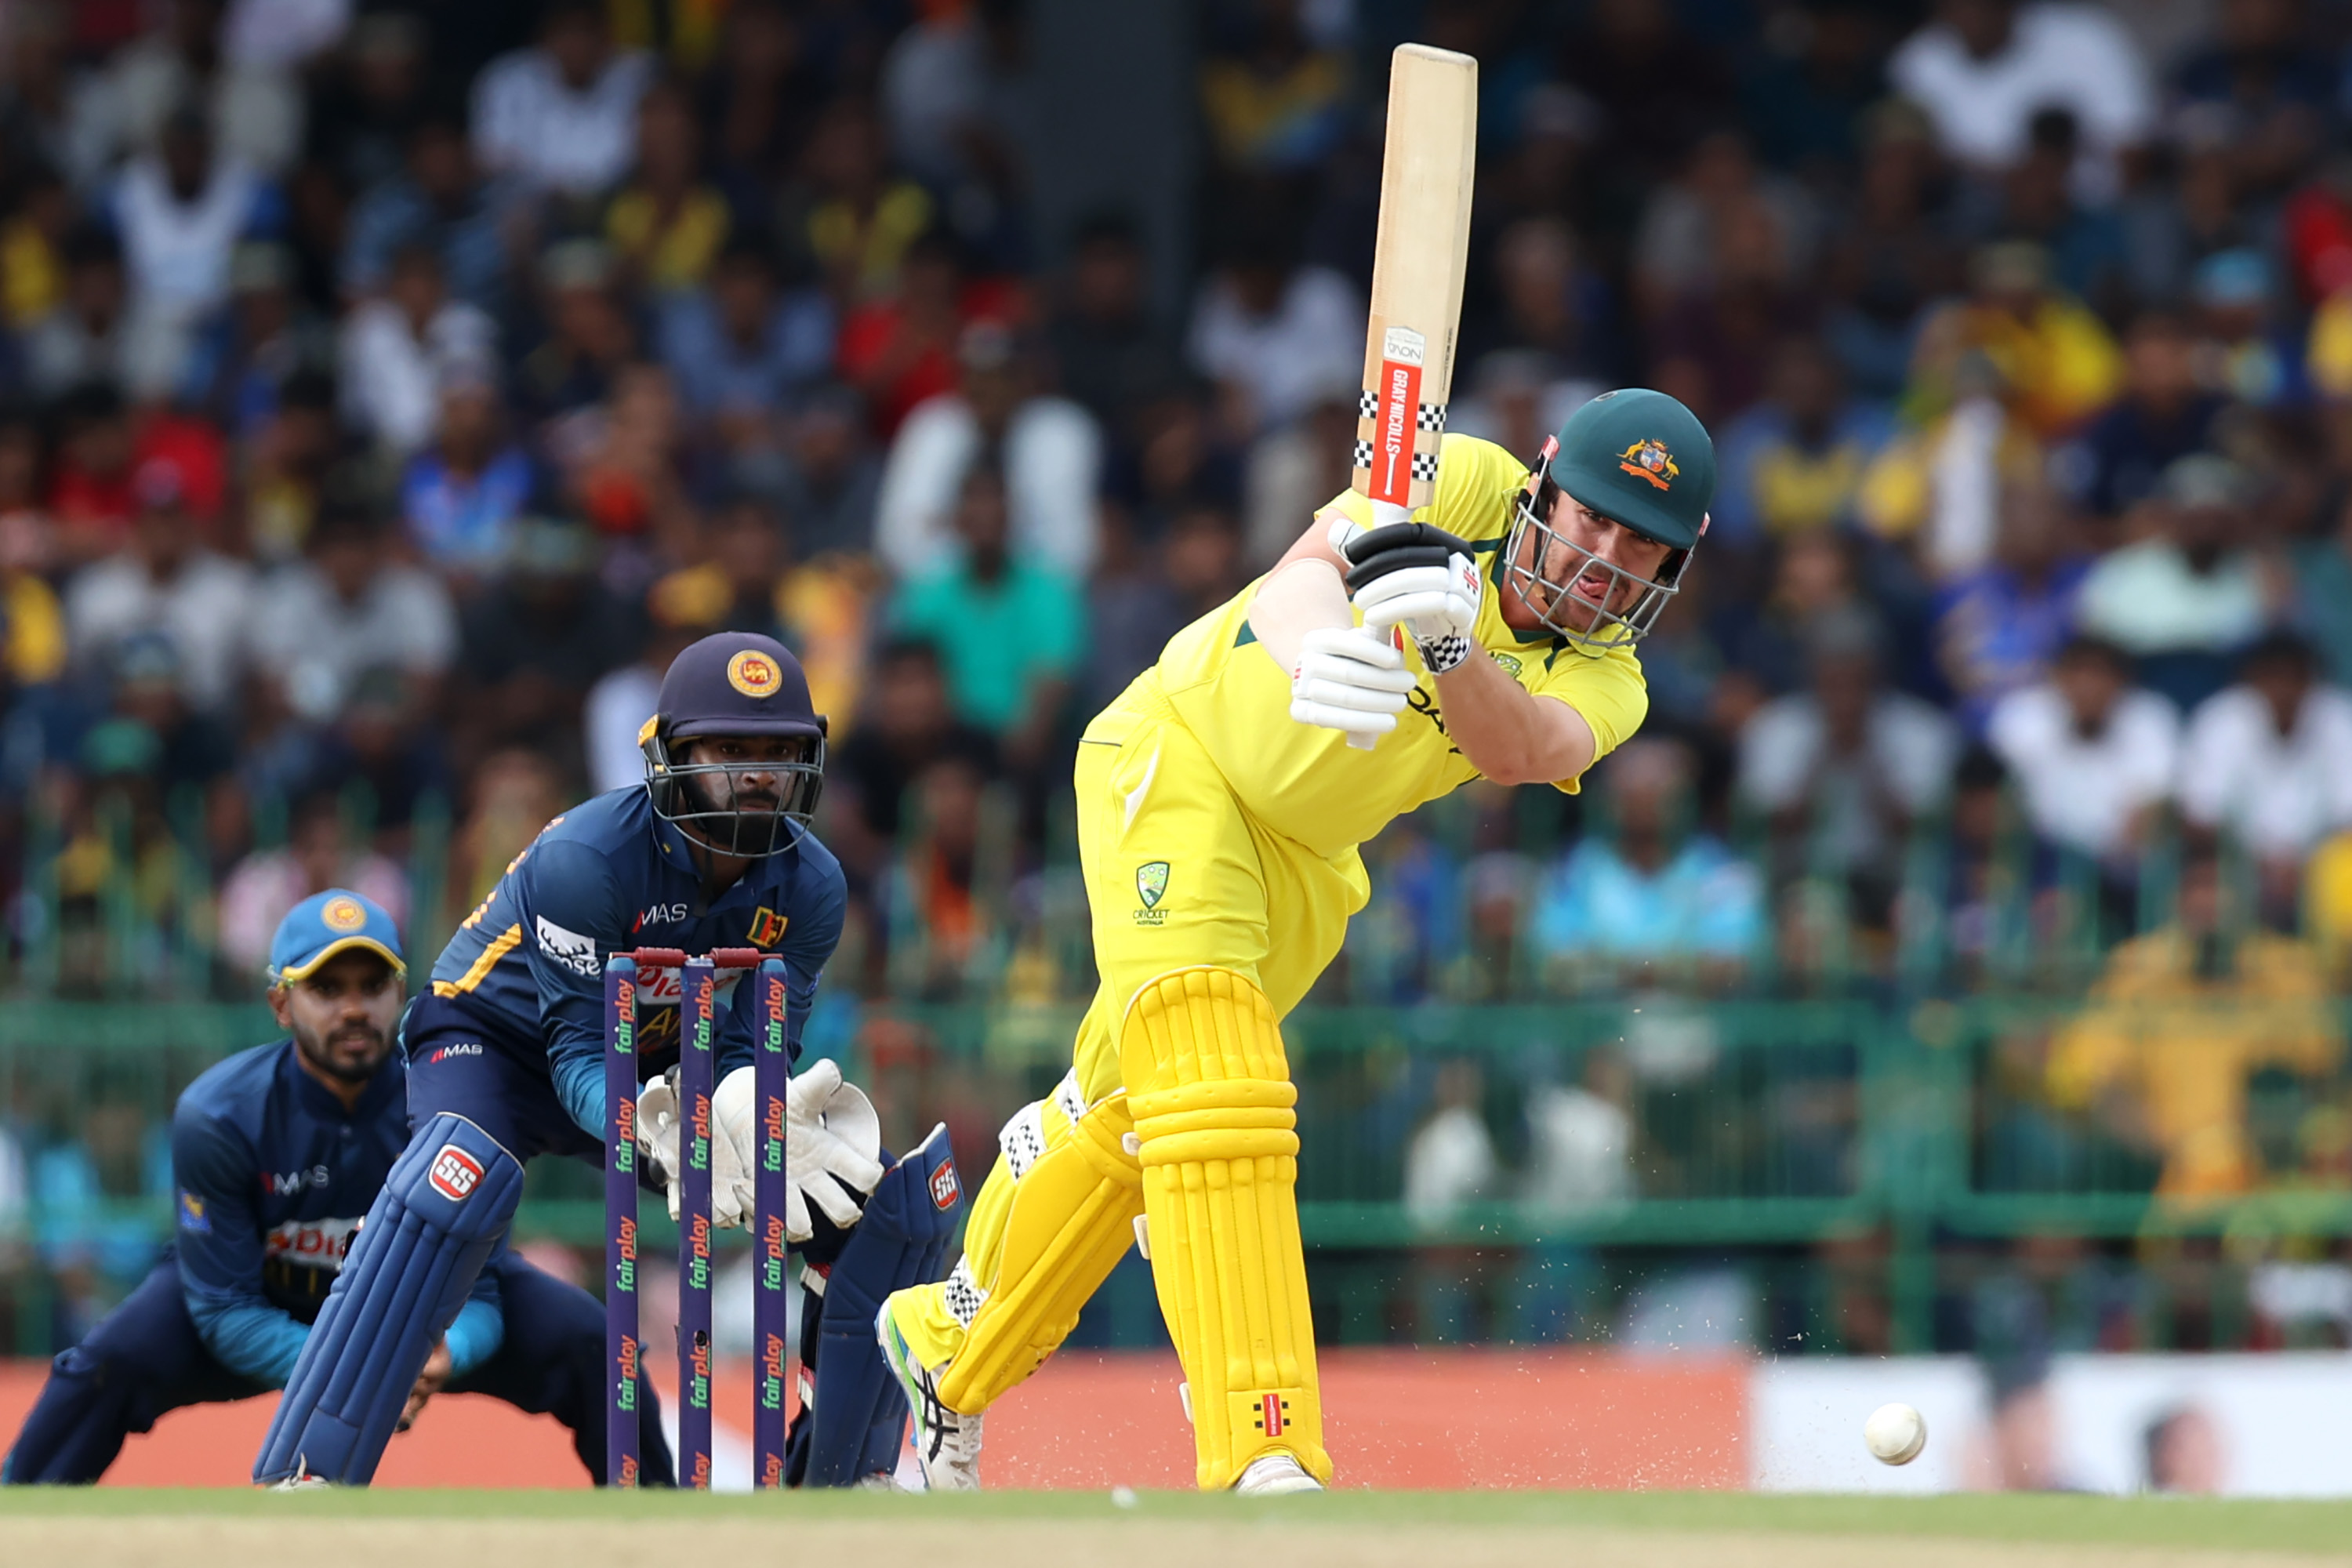 Australia ODI Sri Lanka mengejar 292 untuk memimpin seri, Travis Head